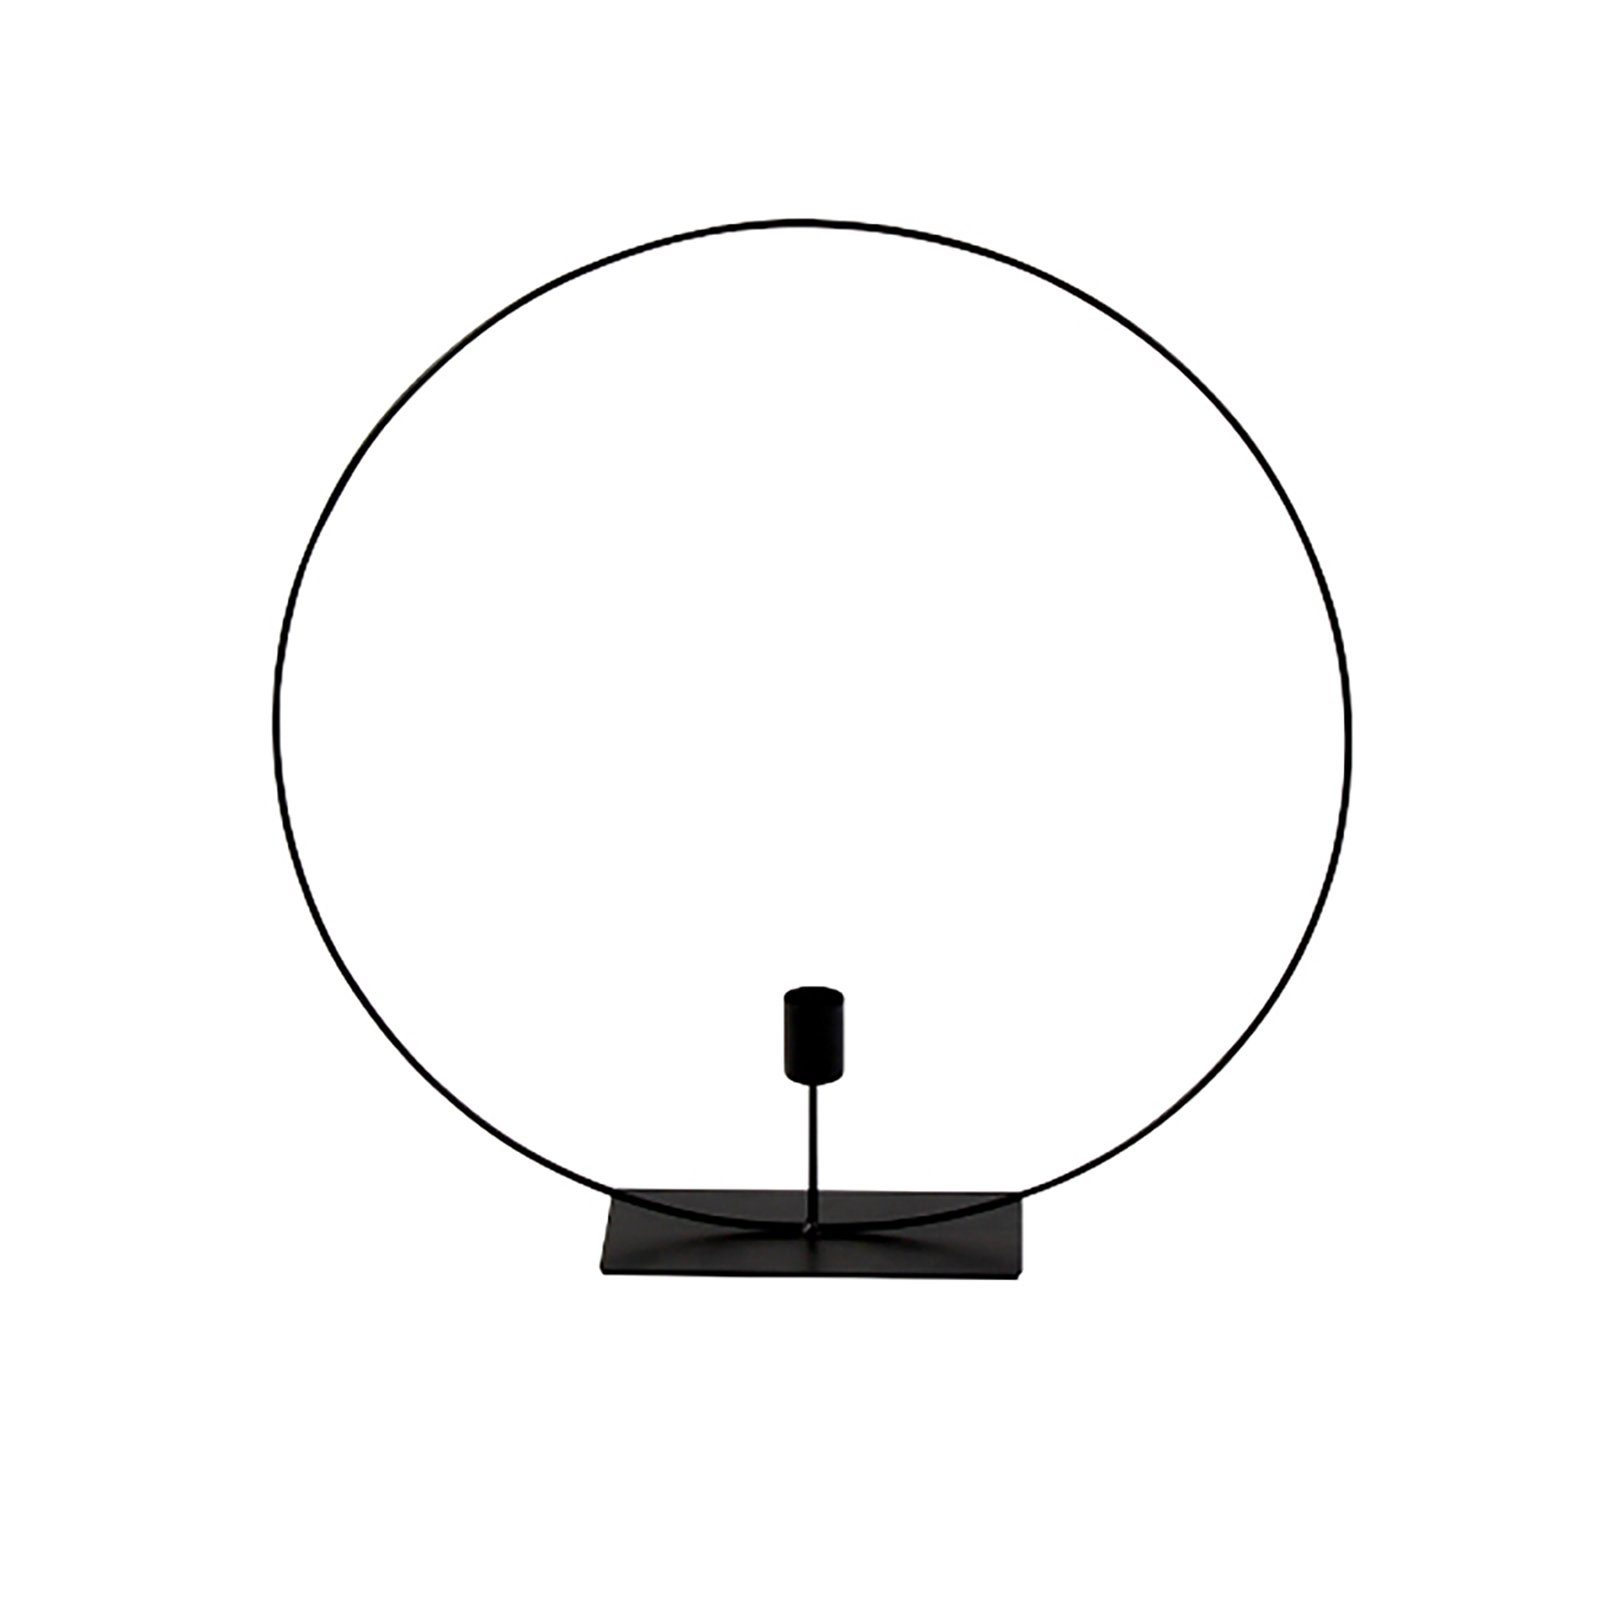 Werner Voß Kerzenhalter Kerzenleuchter Circle, schwarz, Metall, 40x8x40 cm